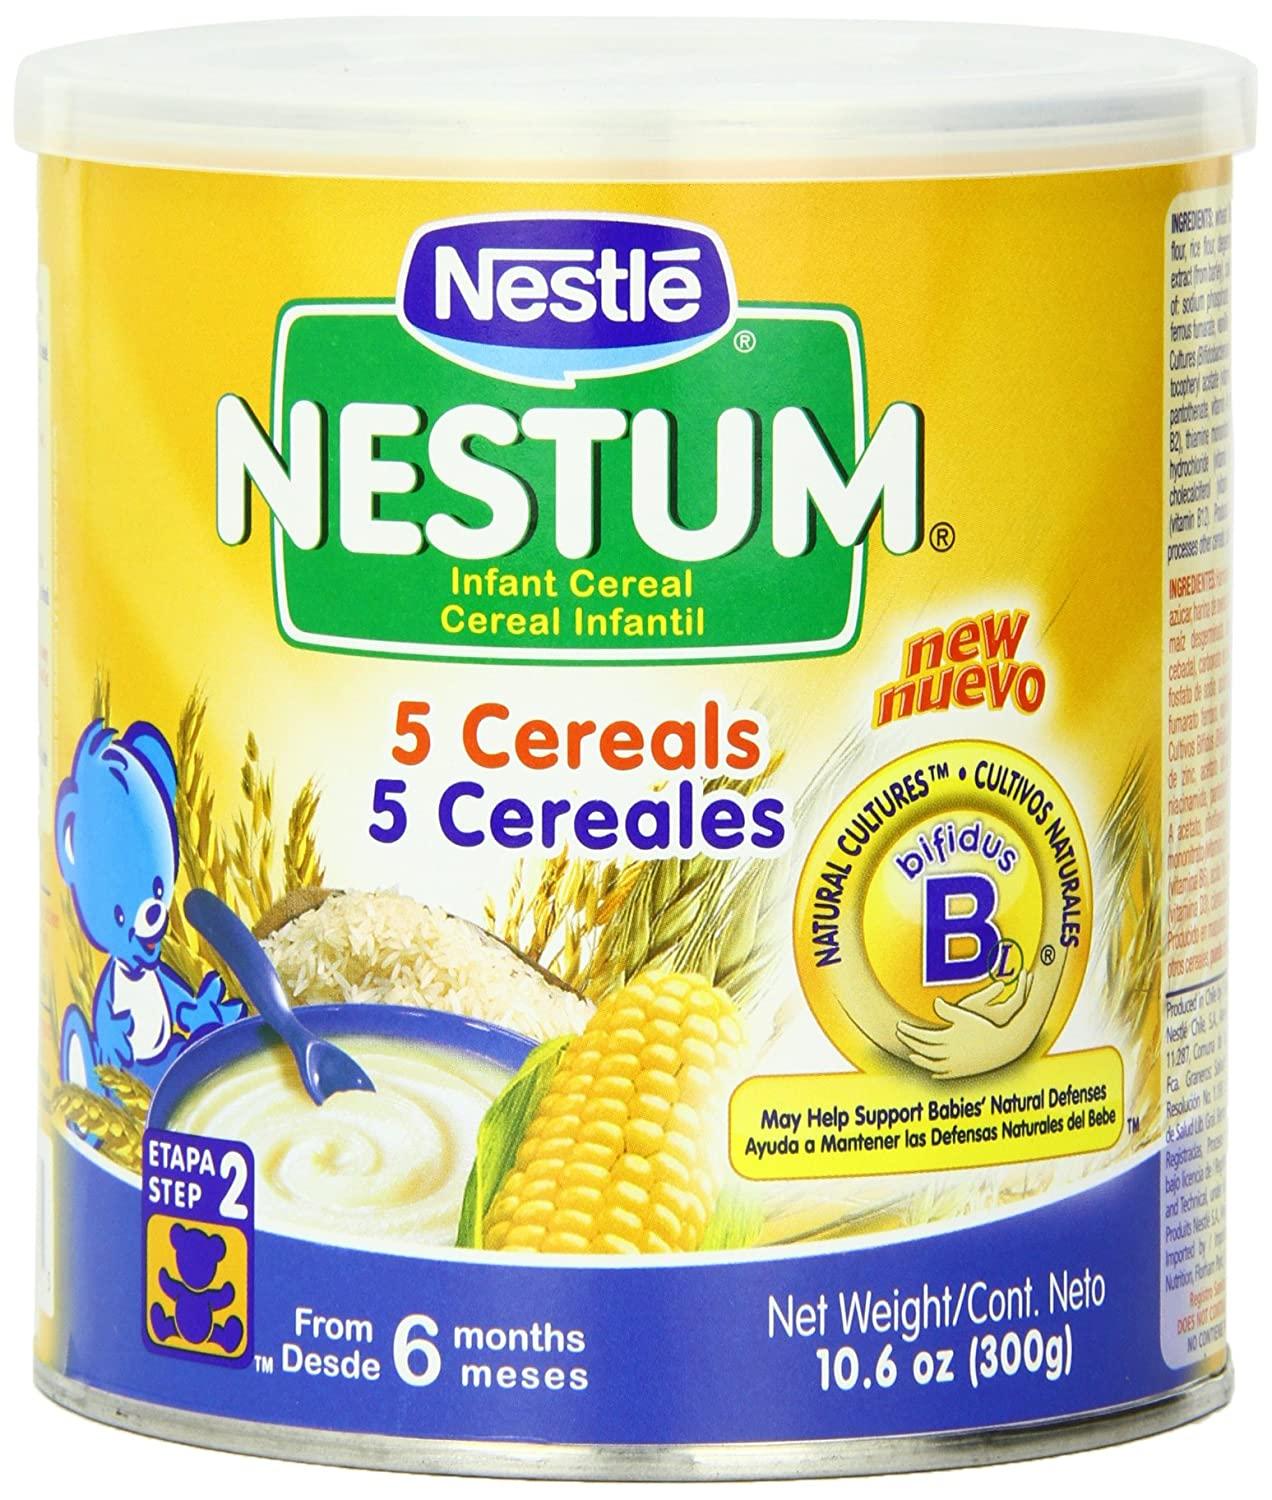 Nestle - Nestum 5 Cereals Infant Cereal 10.6 oz